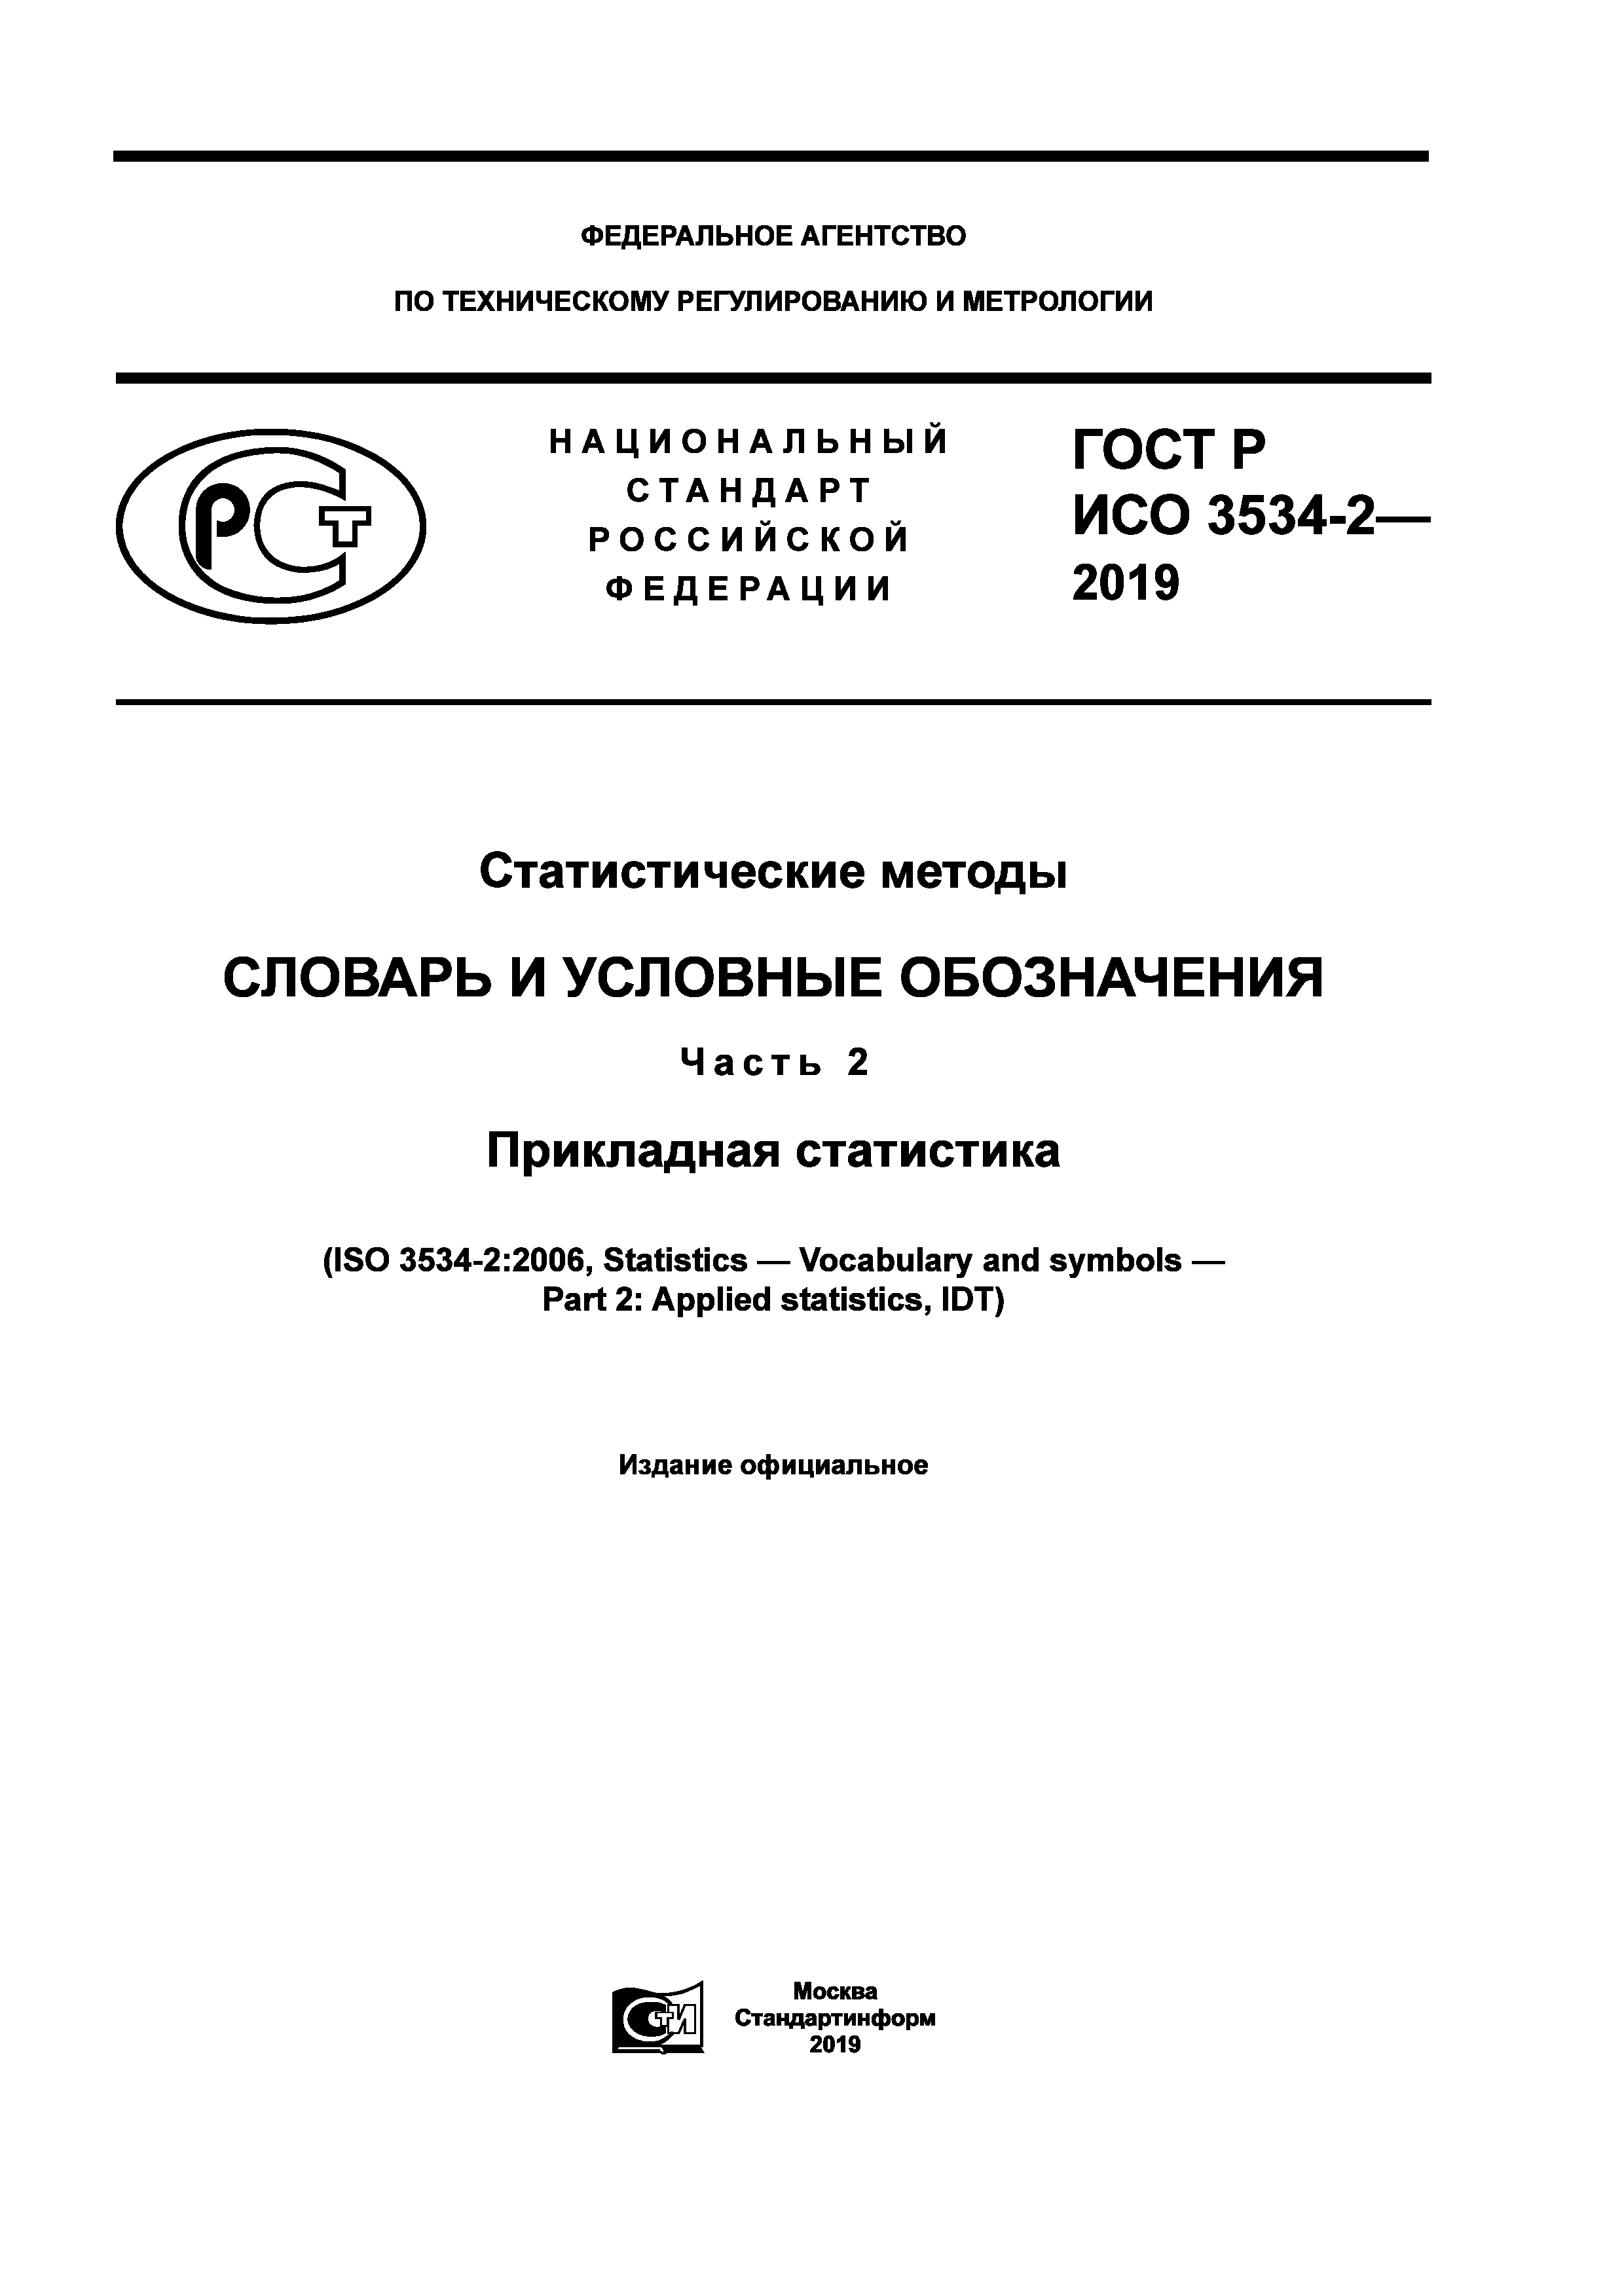 ГОСТ Р ИСО 3534-2-2019